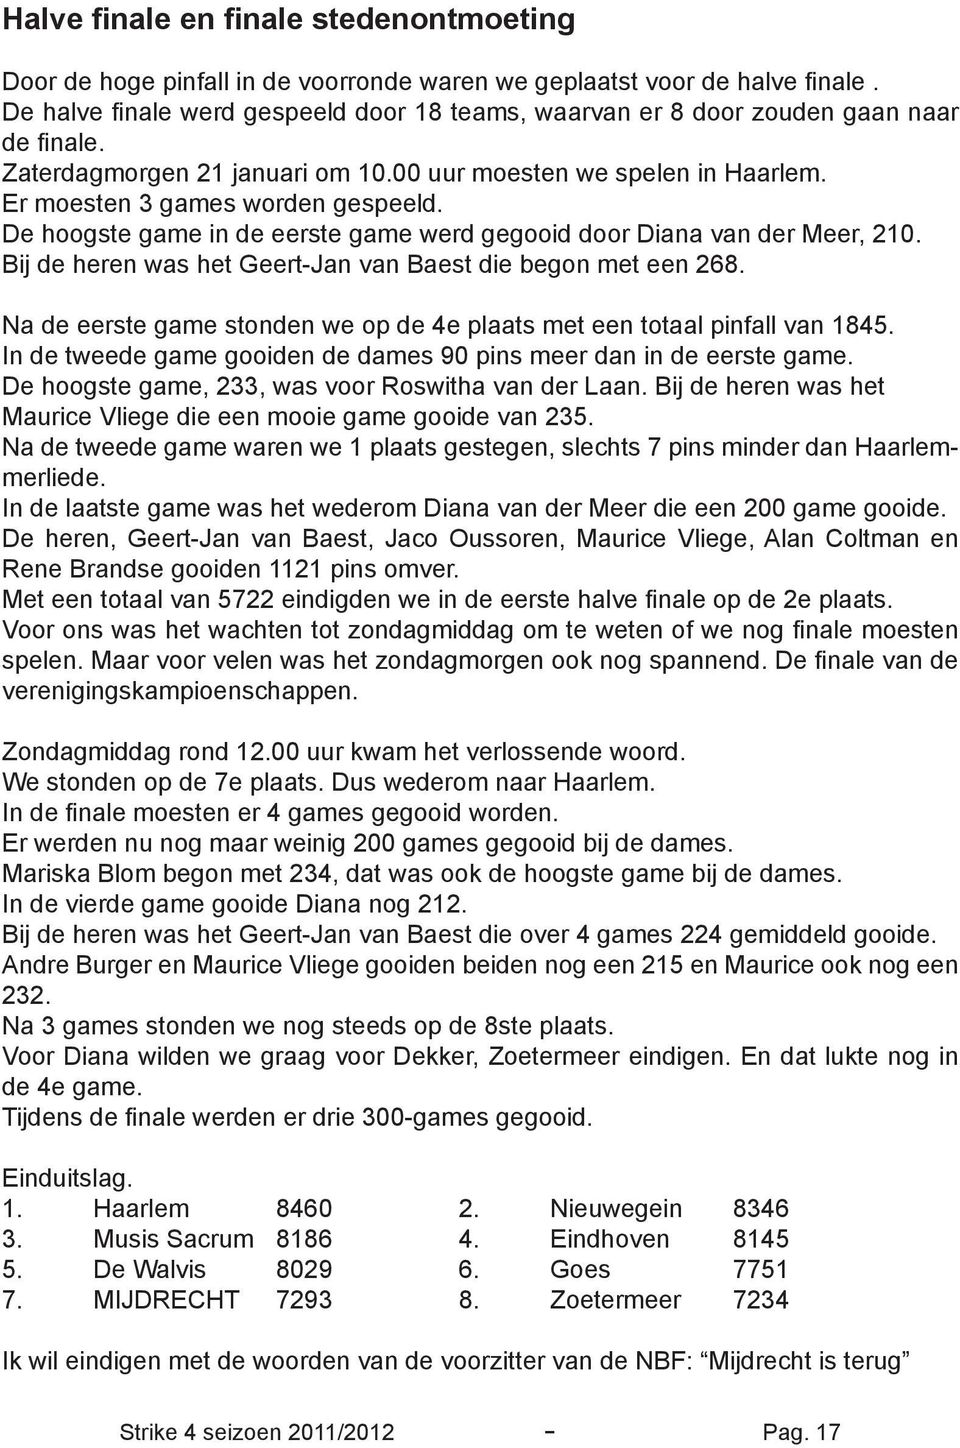 De hoogste game in de eerste game werd gegooid door Diana van der Meer, 210. Bij de heren was het Geert-Jan van Baest die begon met een 268.